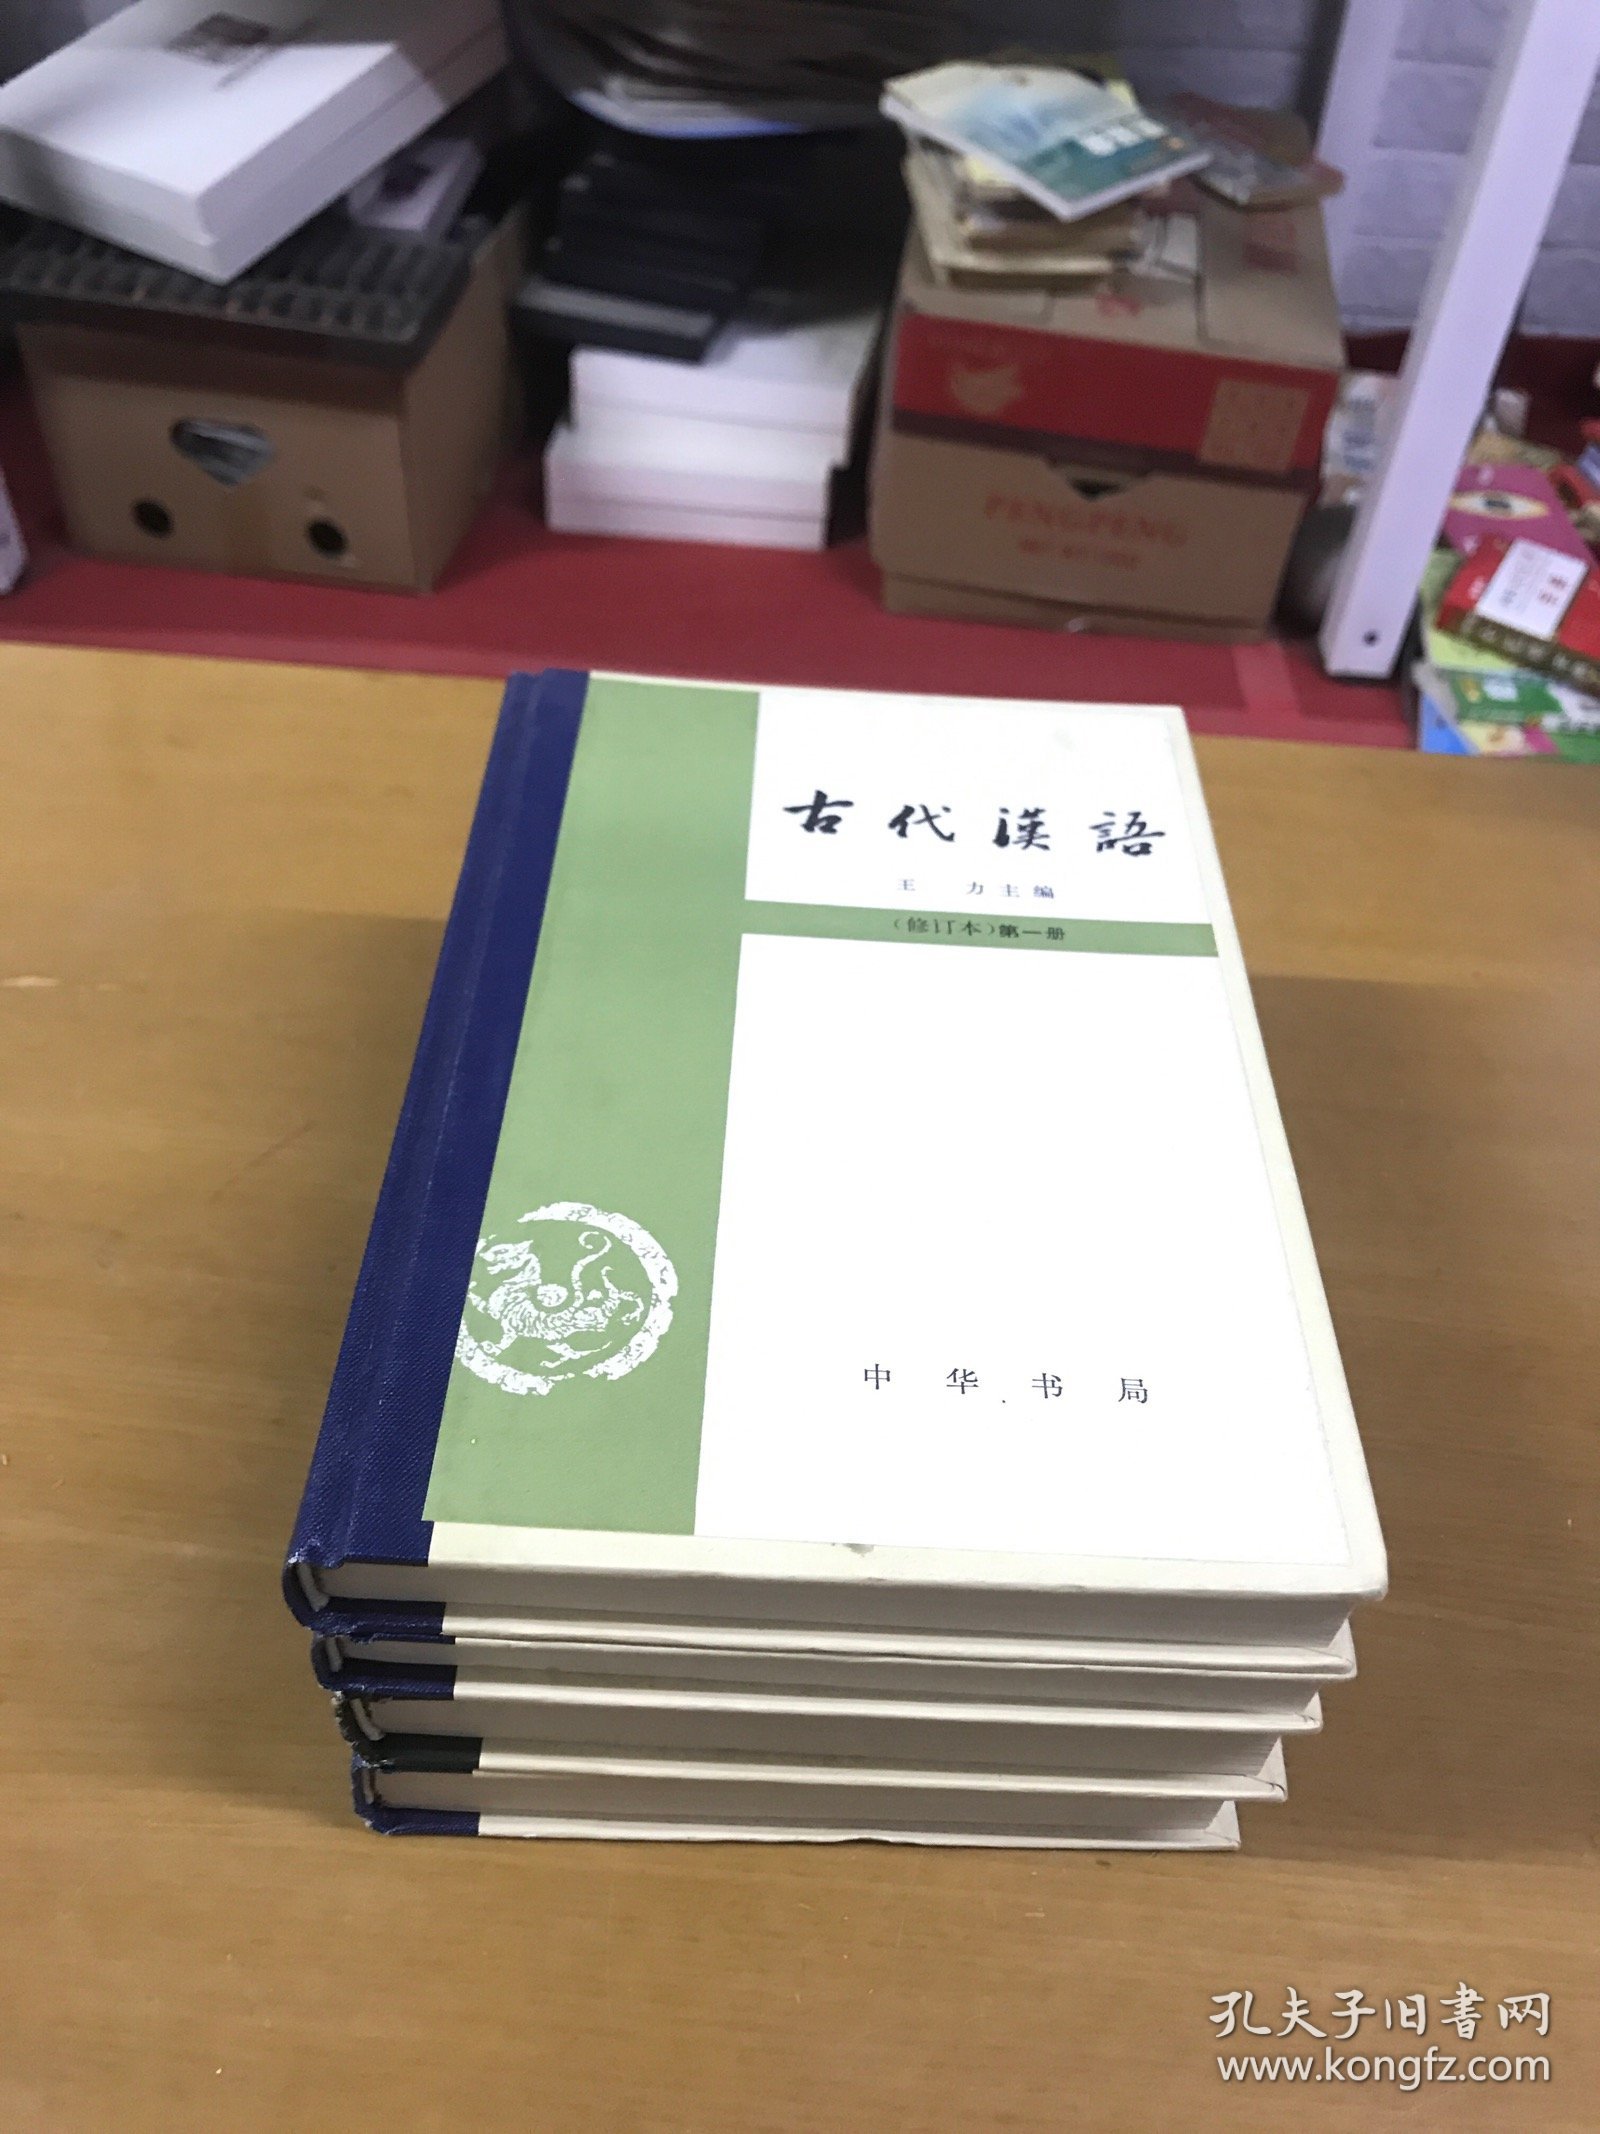 古代汉语（修订本）1-4册全 少见精装本品佳